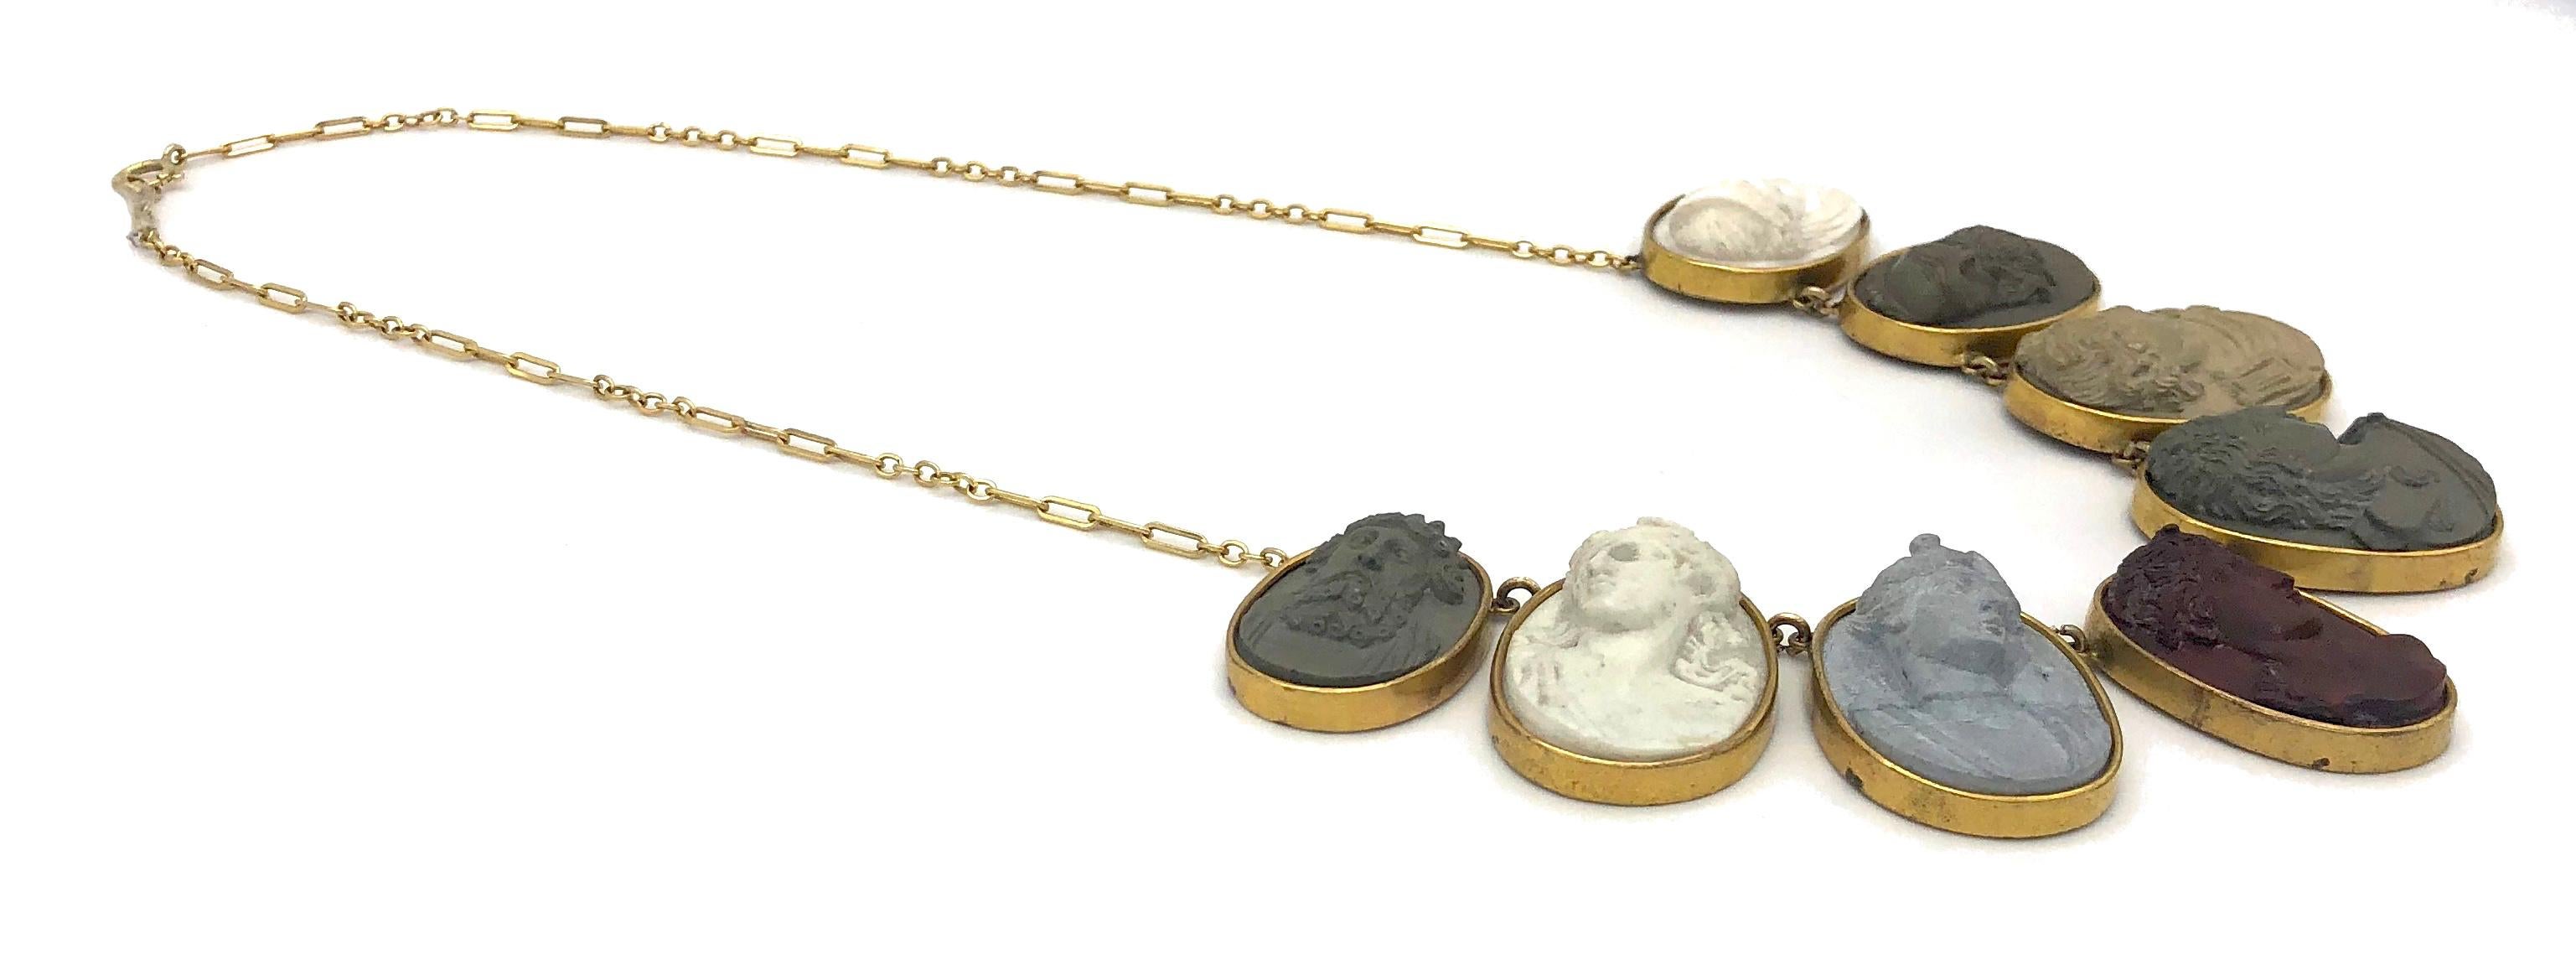 Diese sieben wunderschönen, besonders großen ovalen Lavakameen aus dem frühen 19. Jahrhundert, die zwischen 3,5 cm x 2,6 cm und 2,2 cm x 3 cm messen, sind  in vergoldetem Metall montiert. Sie wurden zu dieser wunderschönen Halskette zusammengefügt.